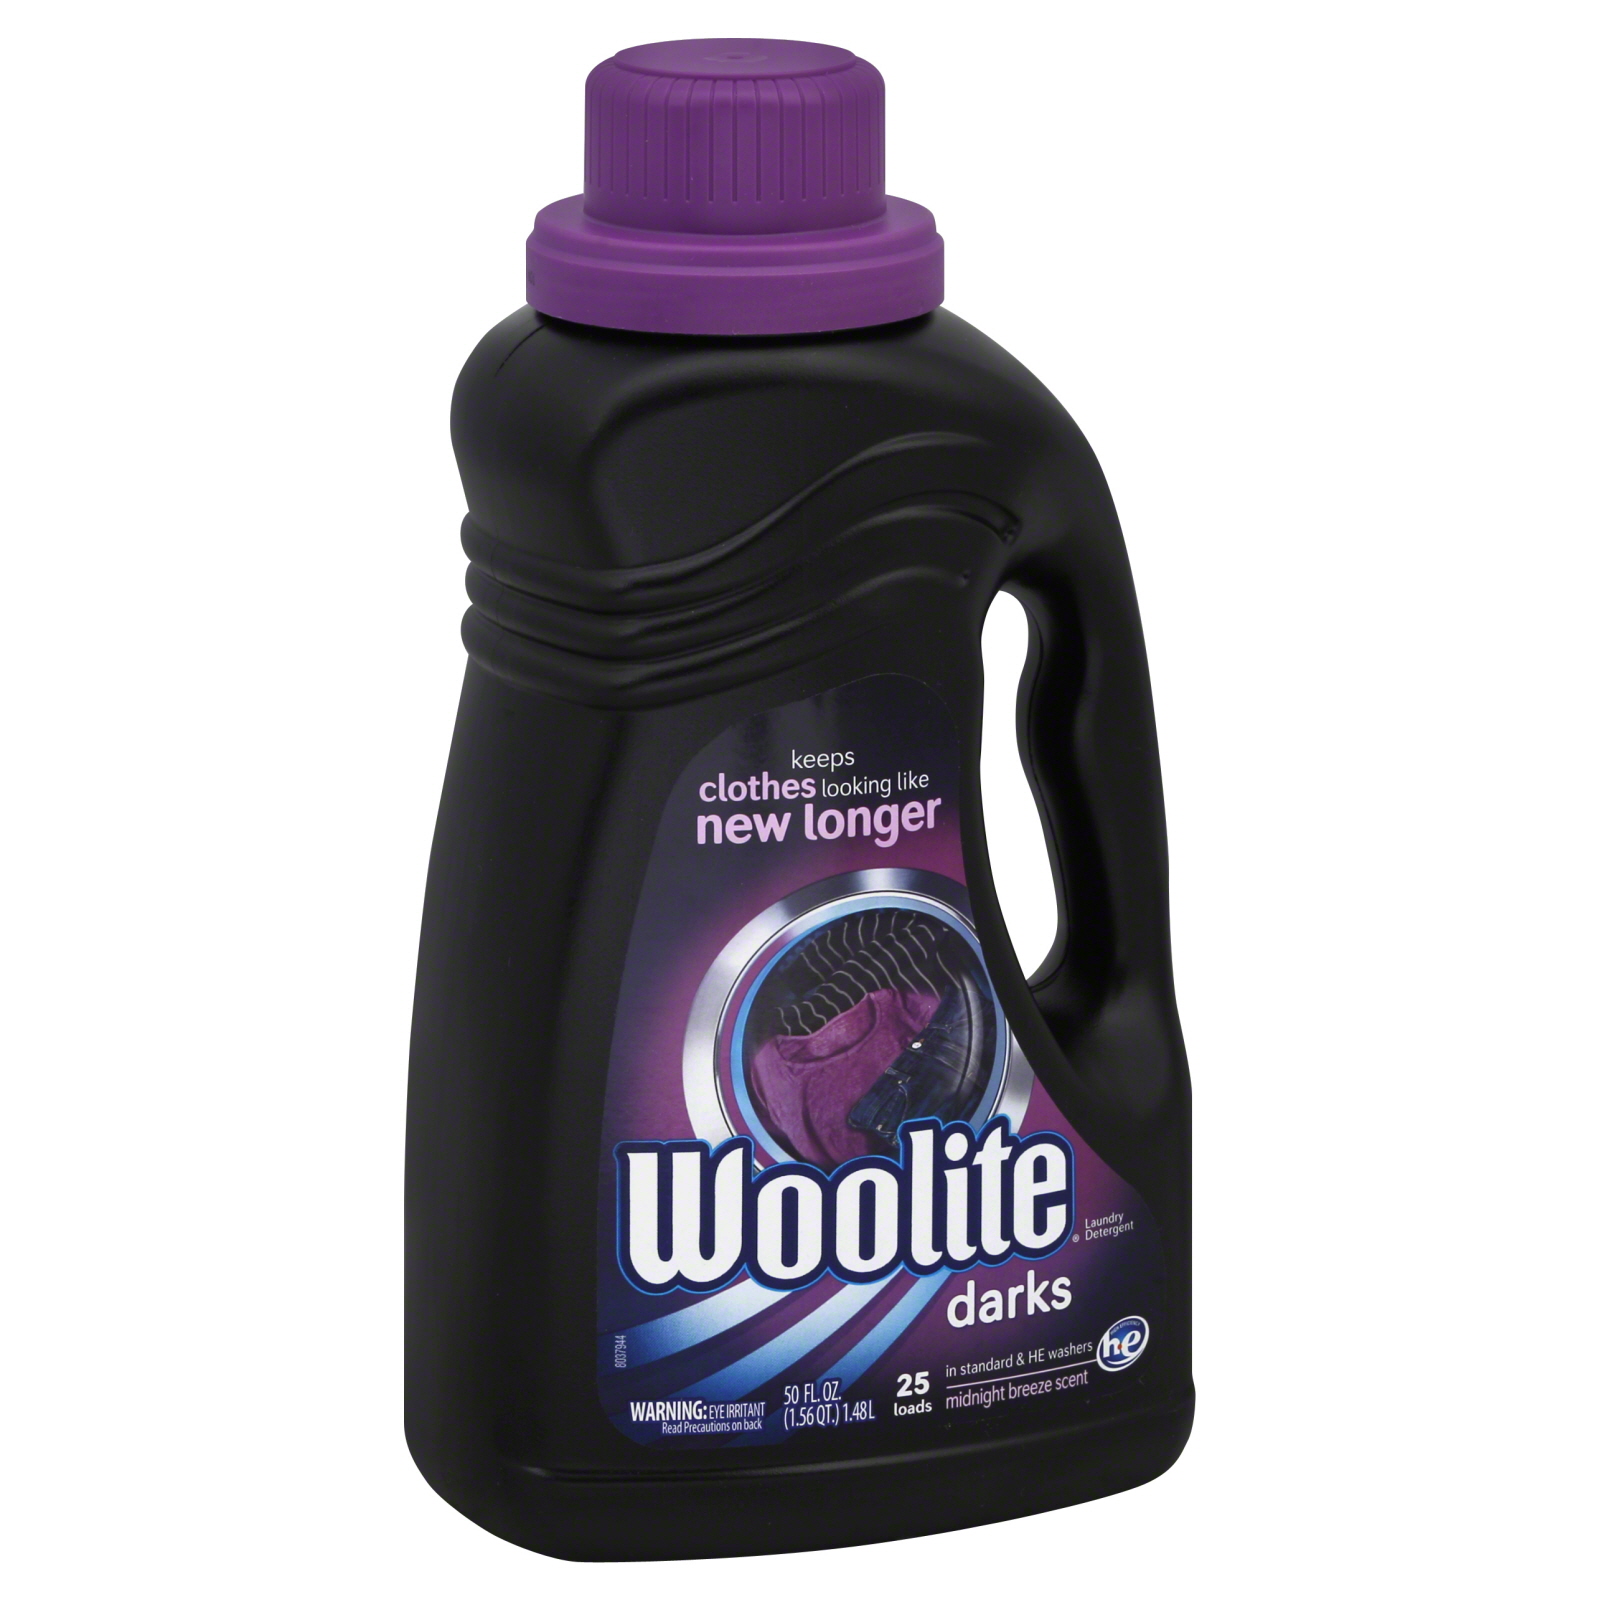 Woolite Darks Liquid Laundry Detergent, Midnight Breeze Scent, 25 Loads, 50 fl oz (1.56 qt) 1.48 lt